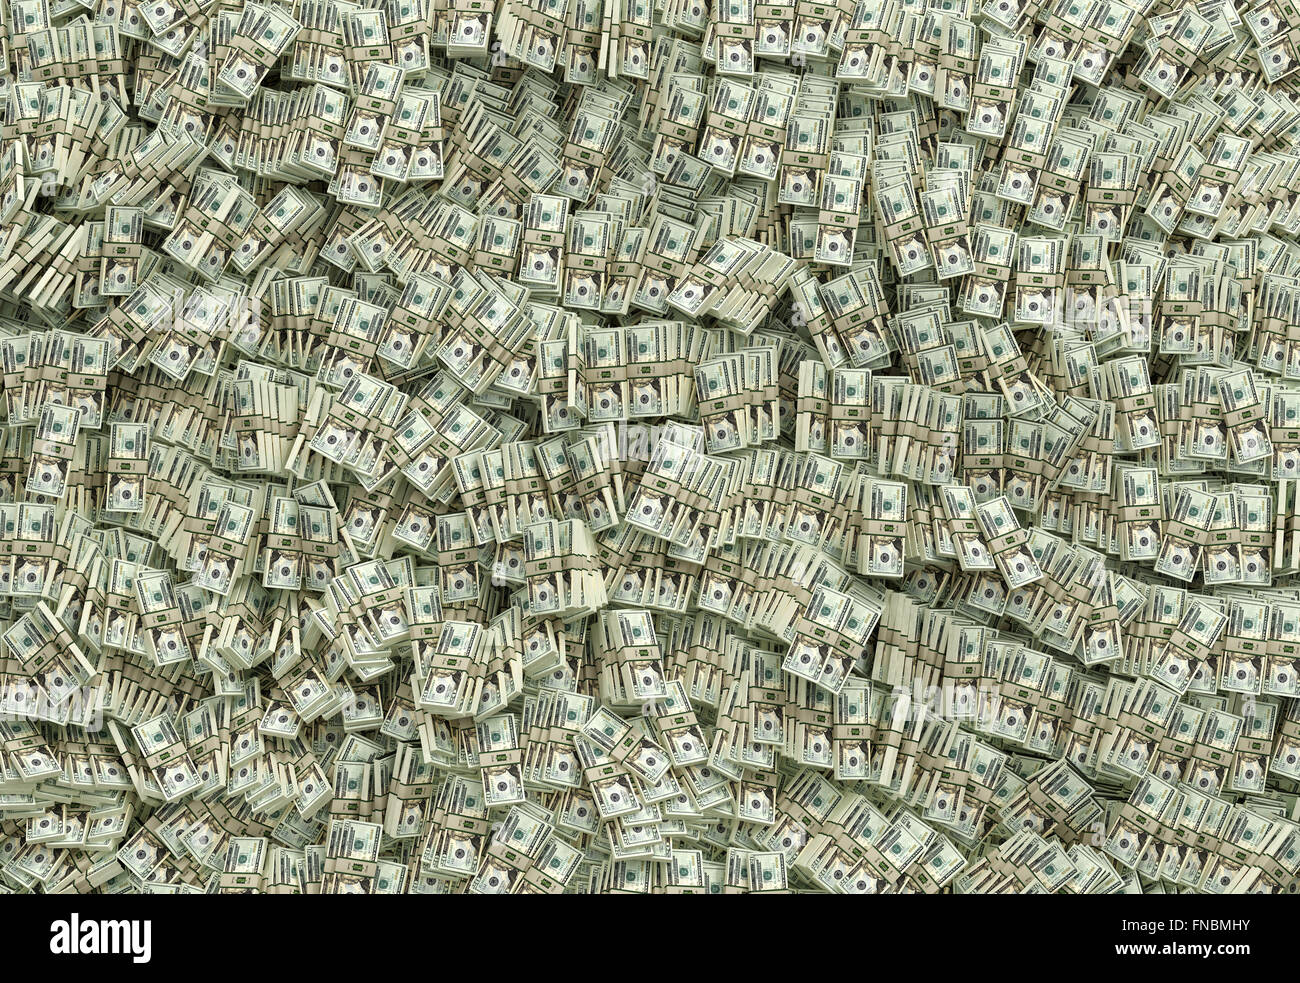 Millions of Dollars - 20 Dollar Bills Stock Photo